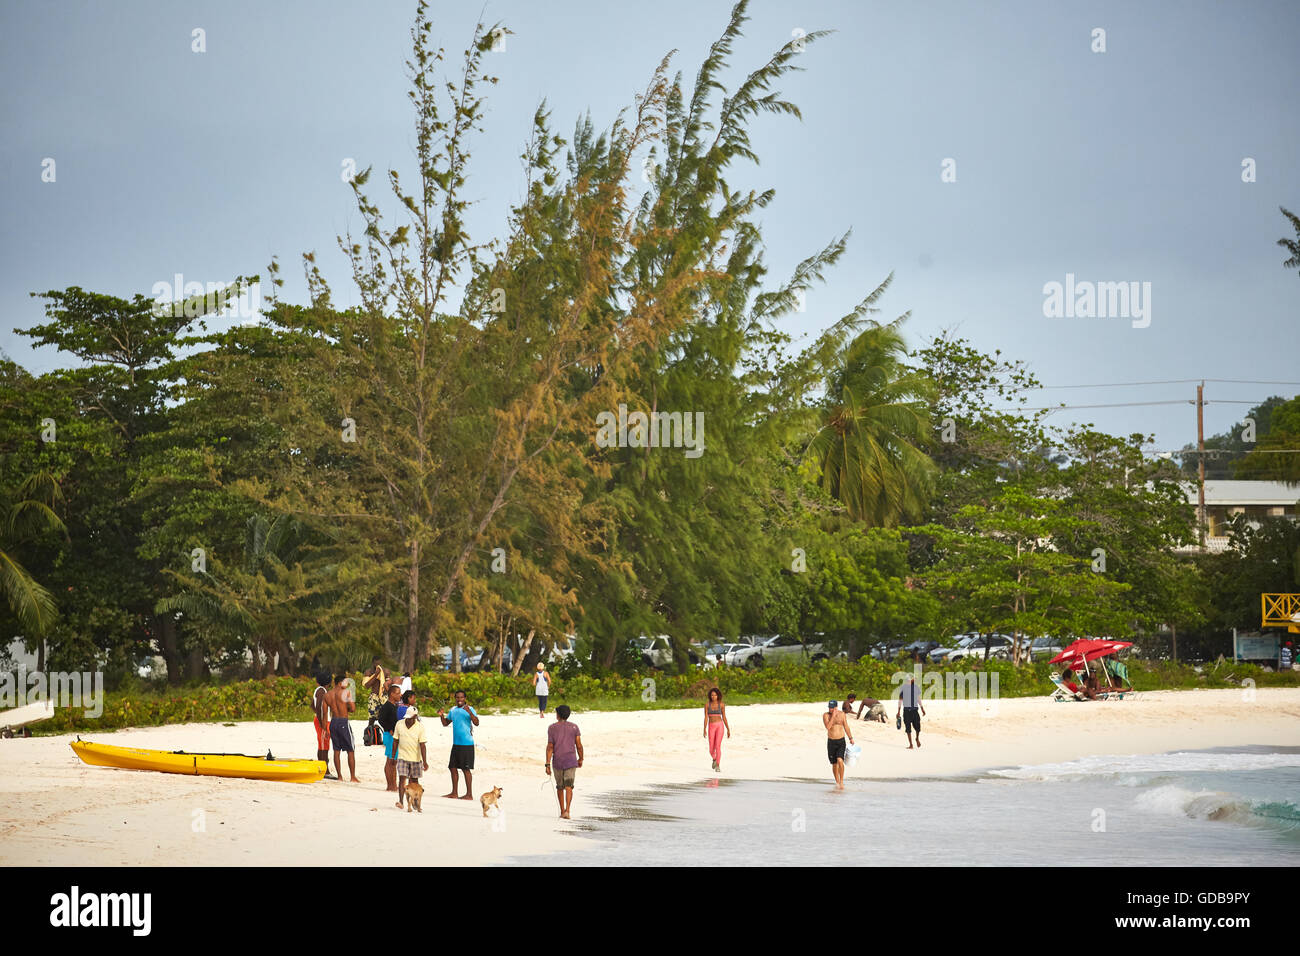 Les Petites Antilles La Barbade paroisse Saint Michael West indies Bridgetown capital plage côtière hêtre Brownes petit Carlisle Bay Banque D'Images